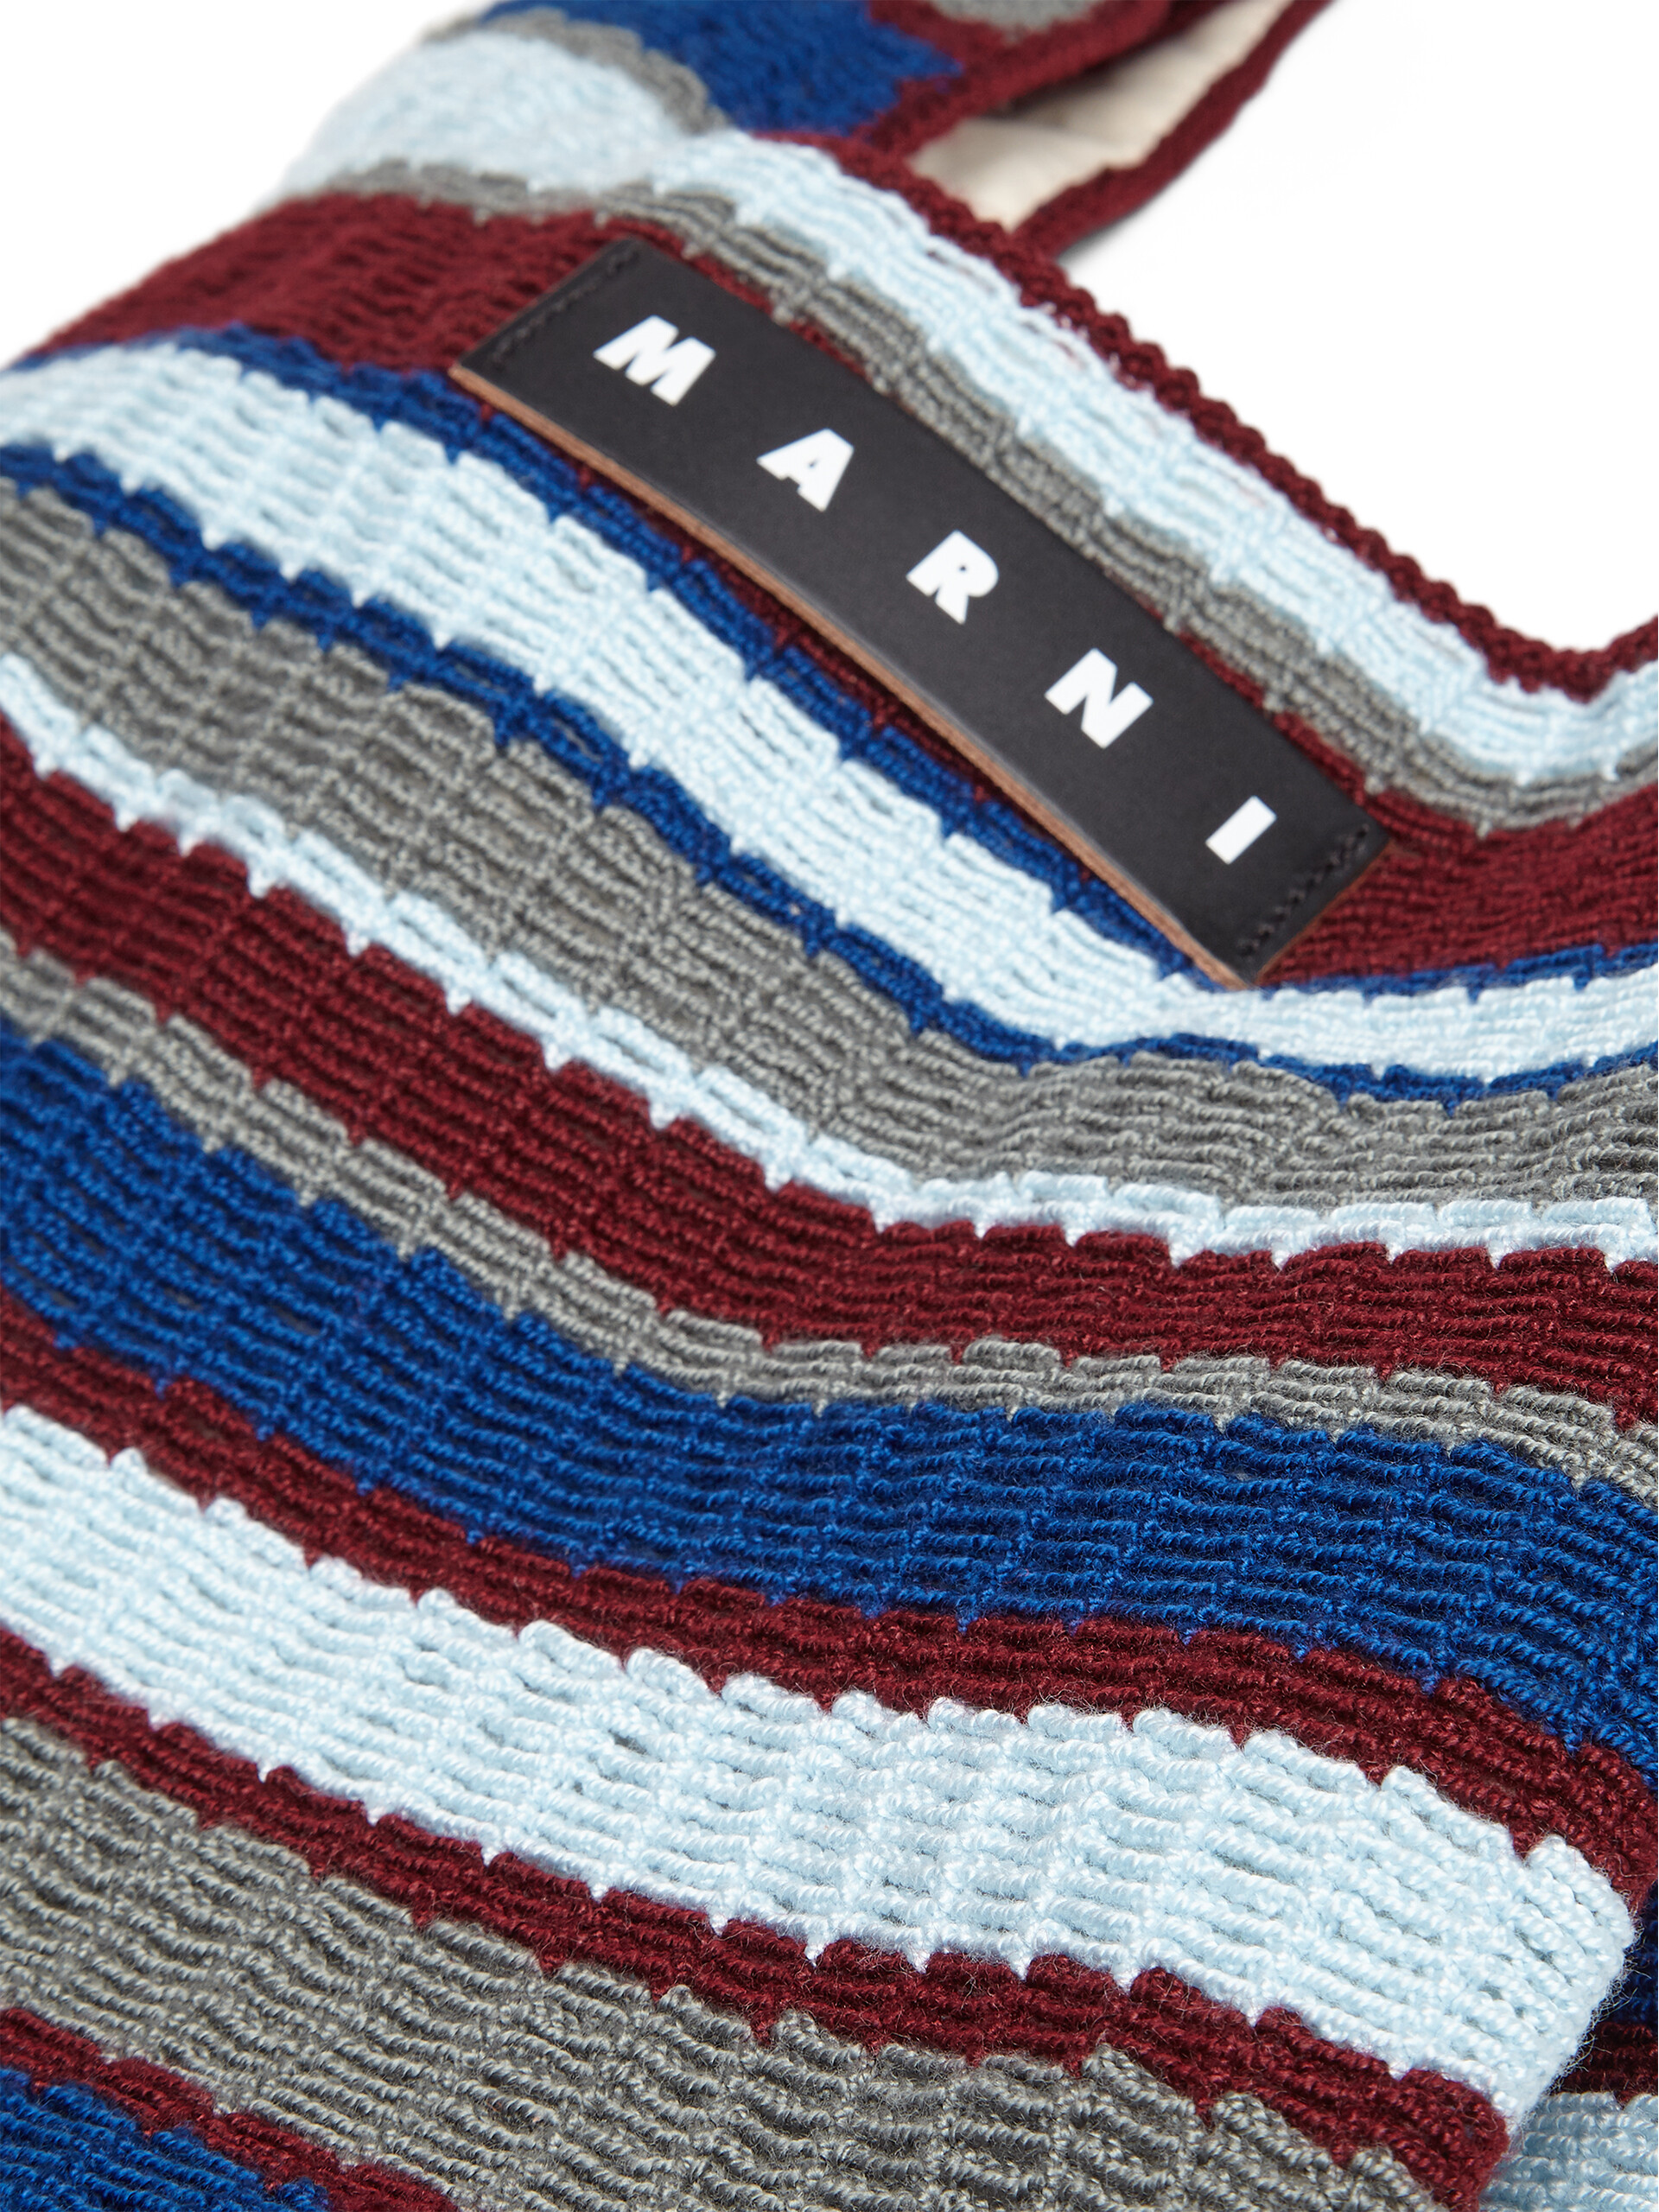 Borsa MARNI MARKET FISH in crochet bianco e blu - Borse - Image 4